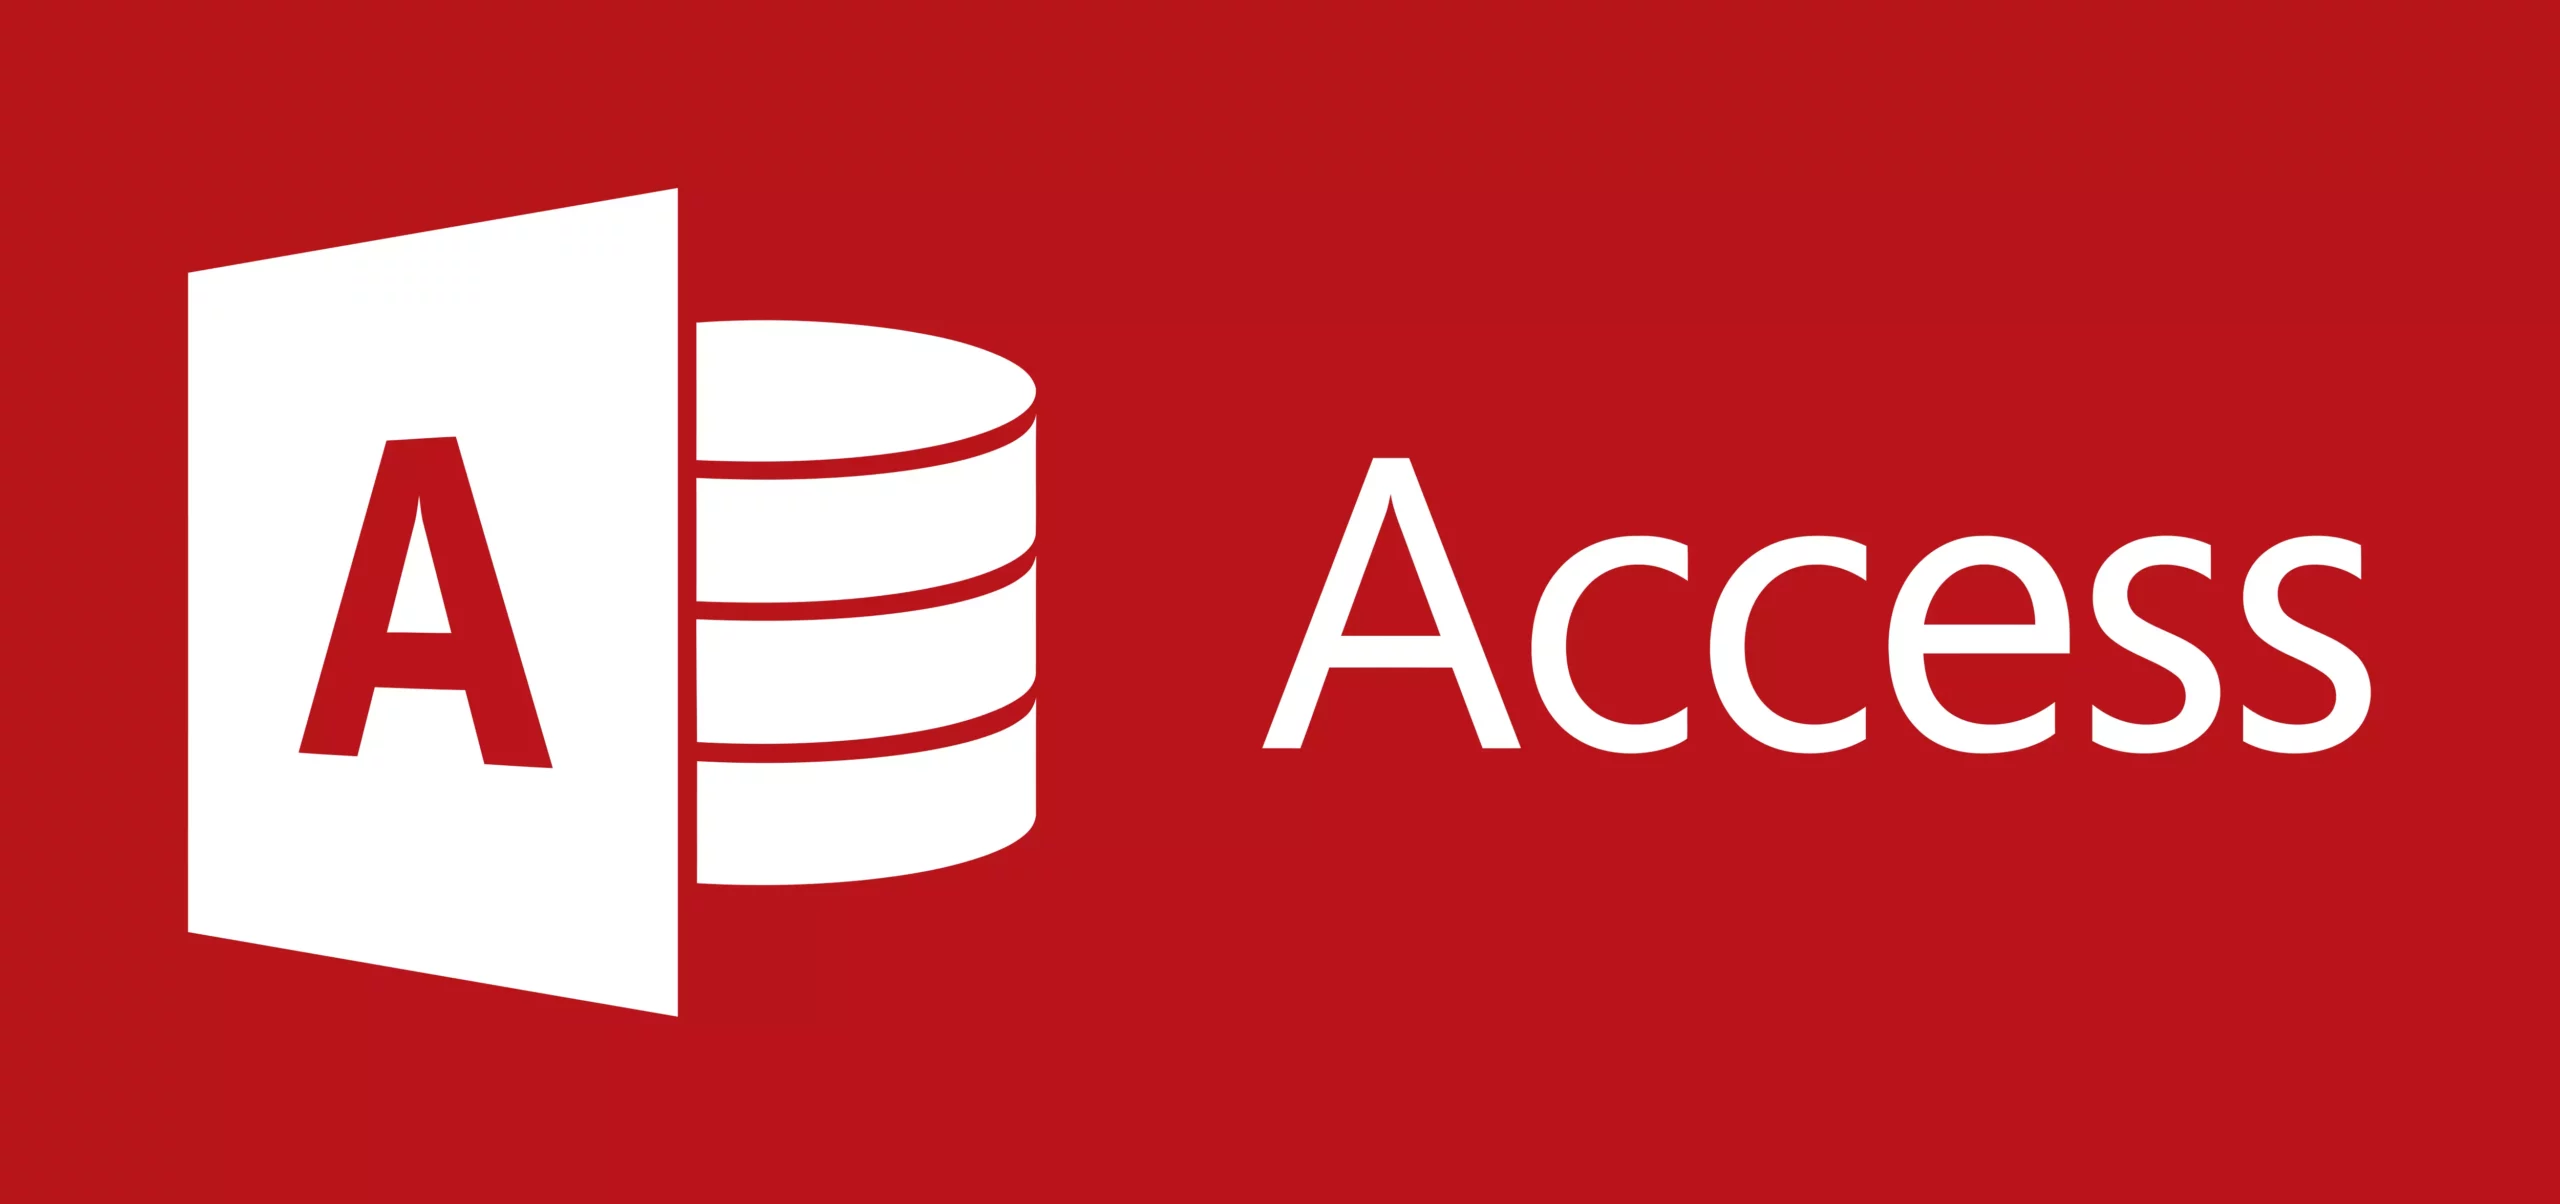 Access là một phần mềm quản lý cơ sở dữ liệu được phát triển bởi Microsoft Office